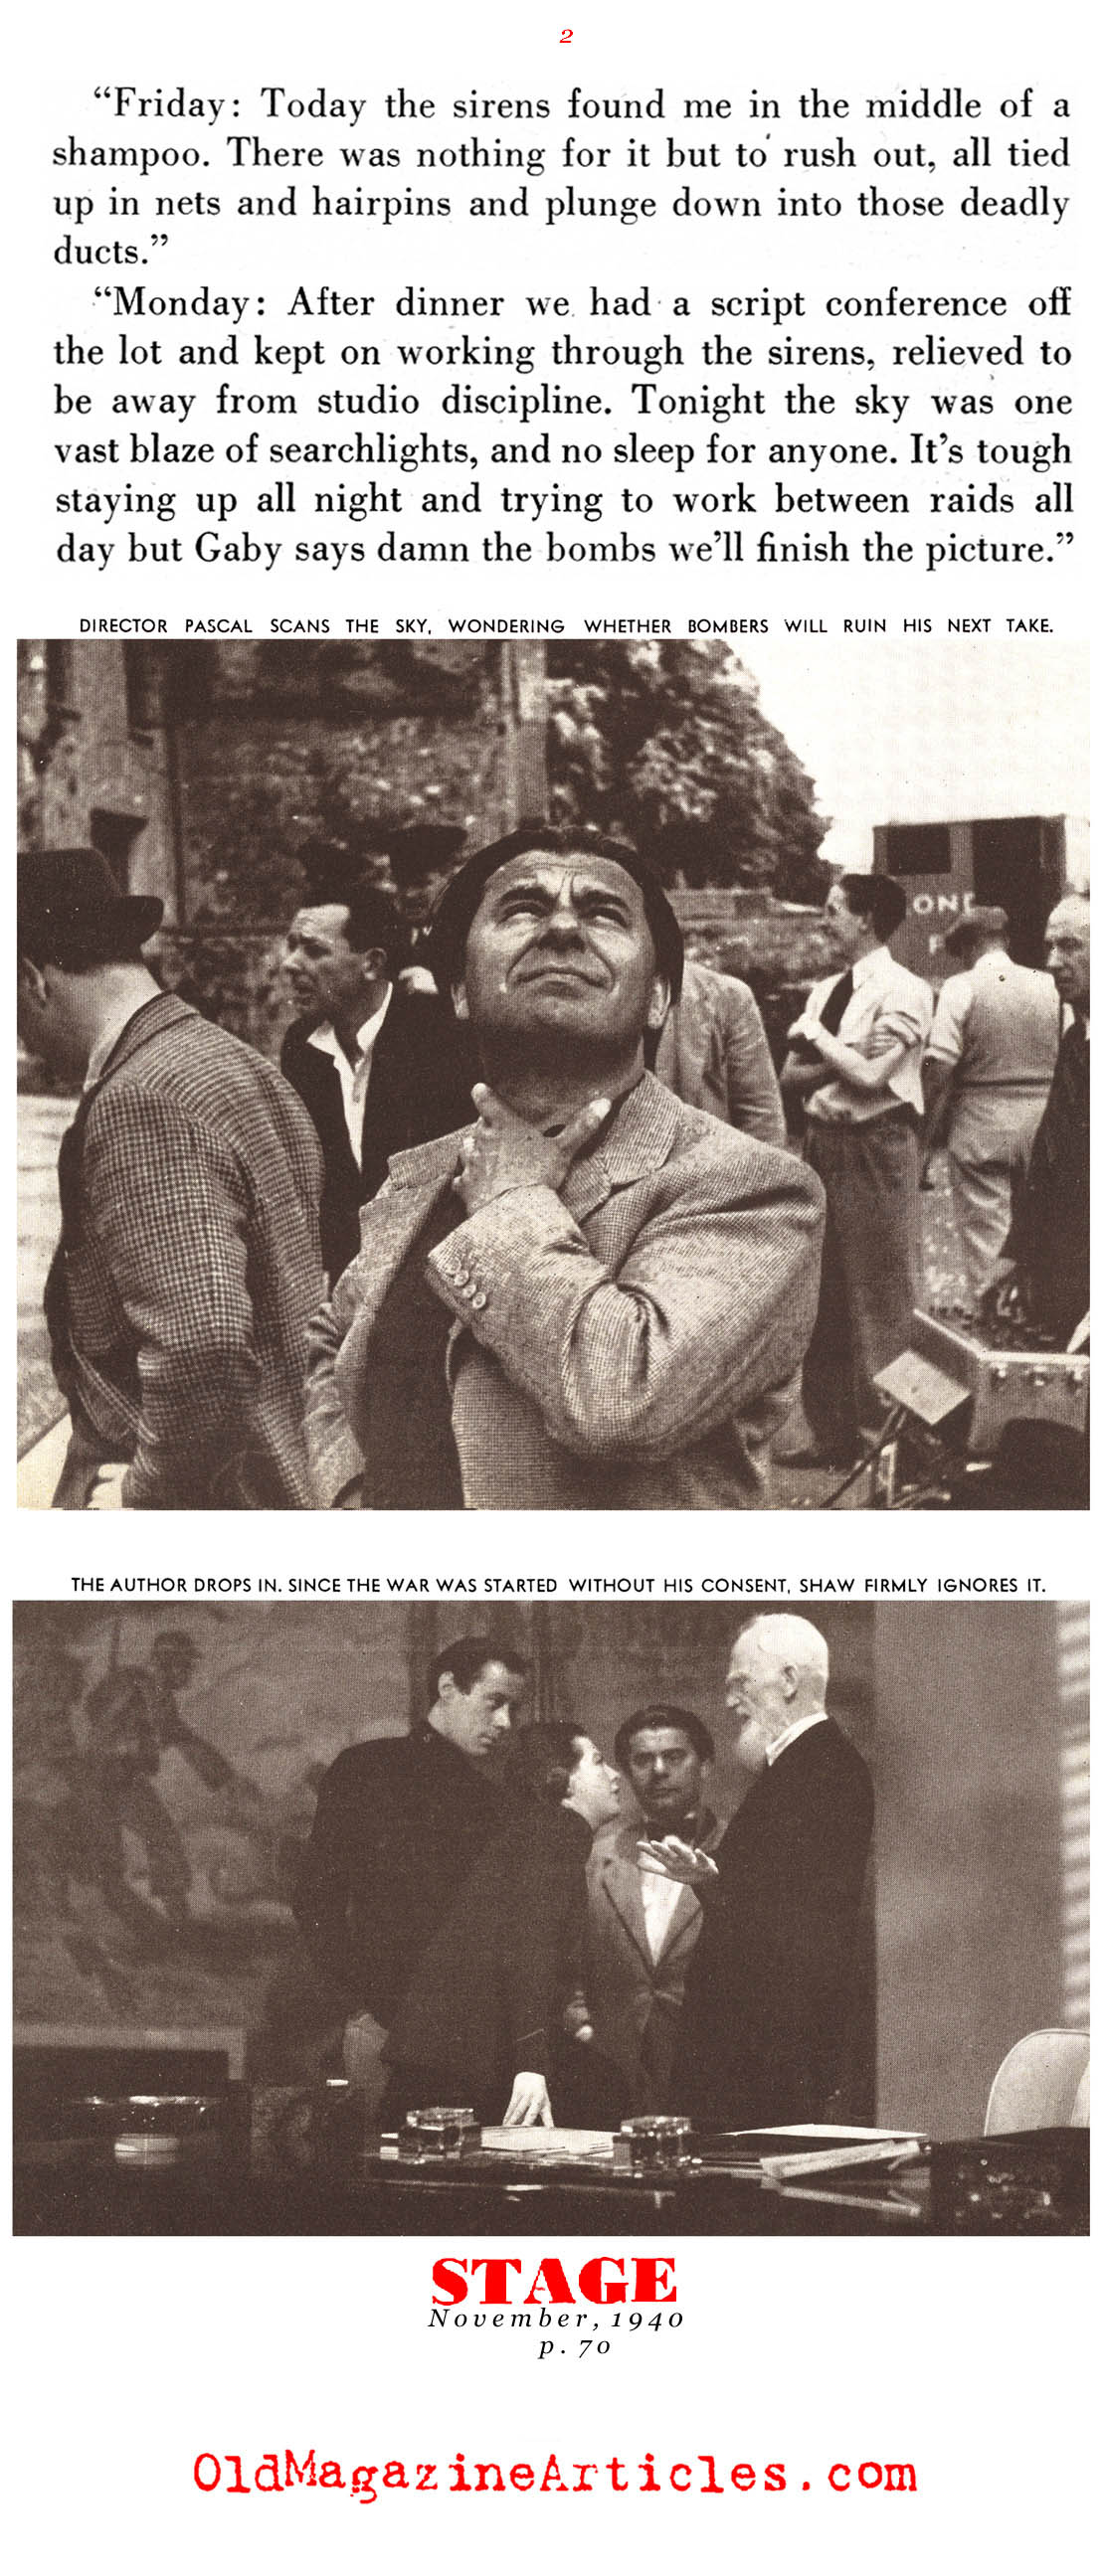 Shooting Scenes Between Air Raids (Stage Magazine, 1940)